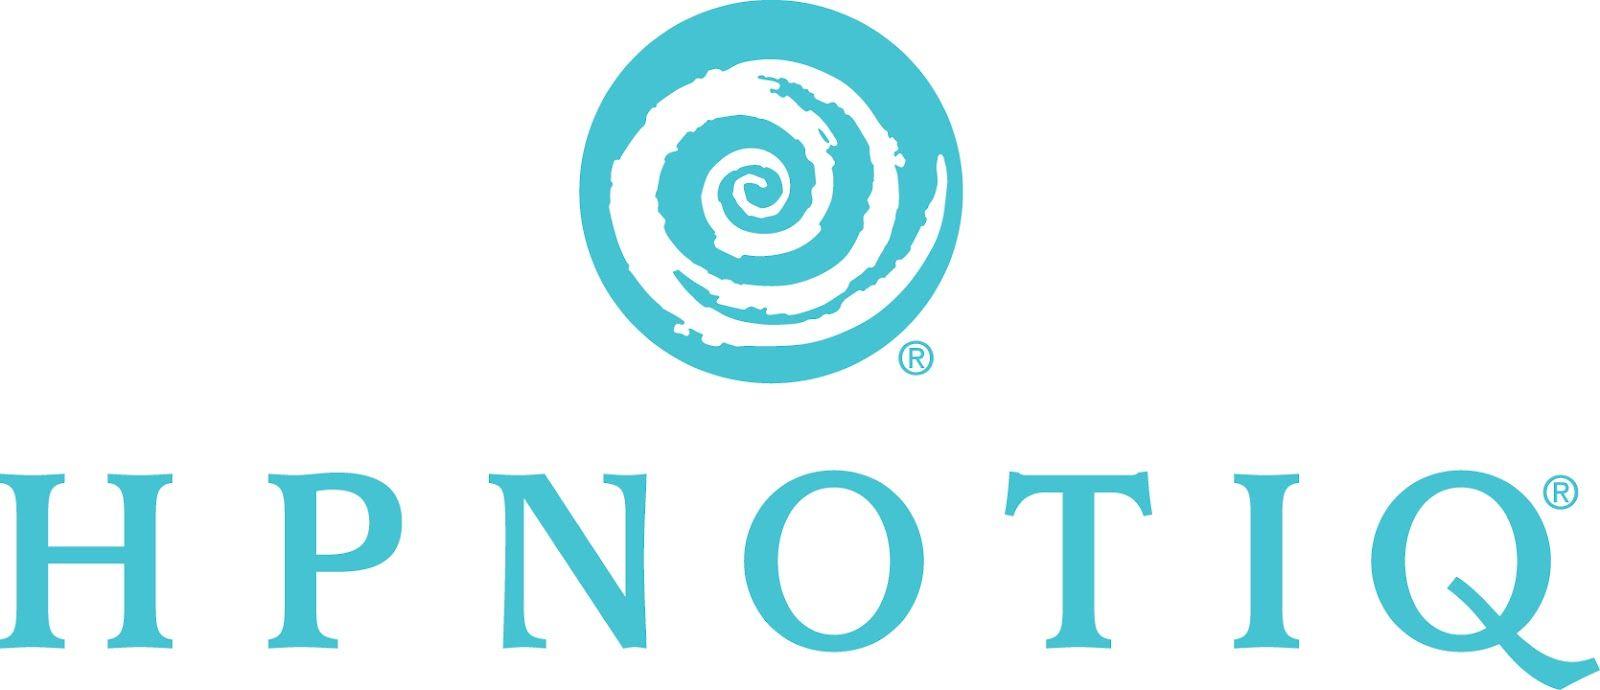 Hpnotiq Logo - Hpnotiq logo | Connectivity Strategy